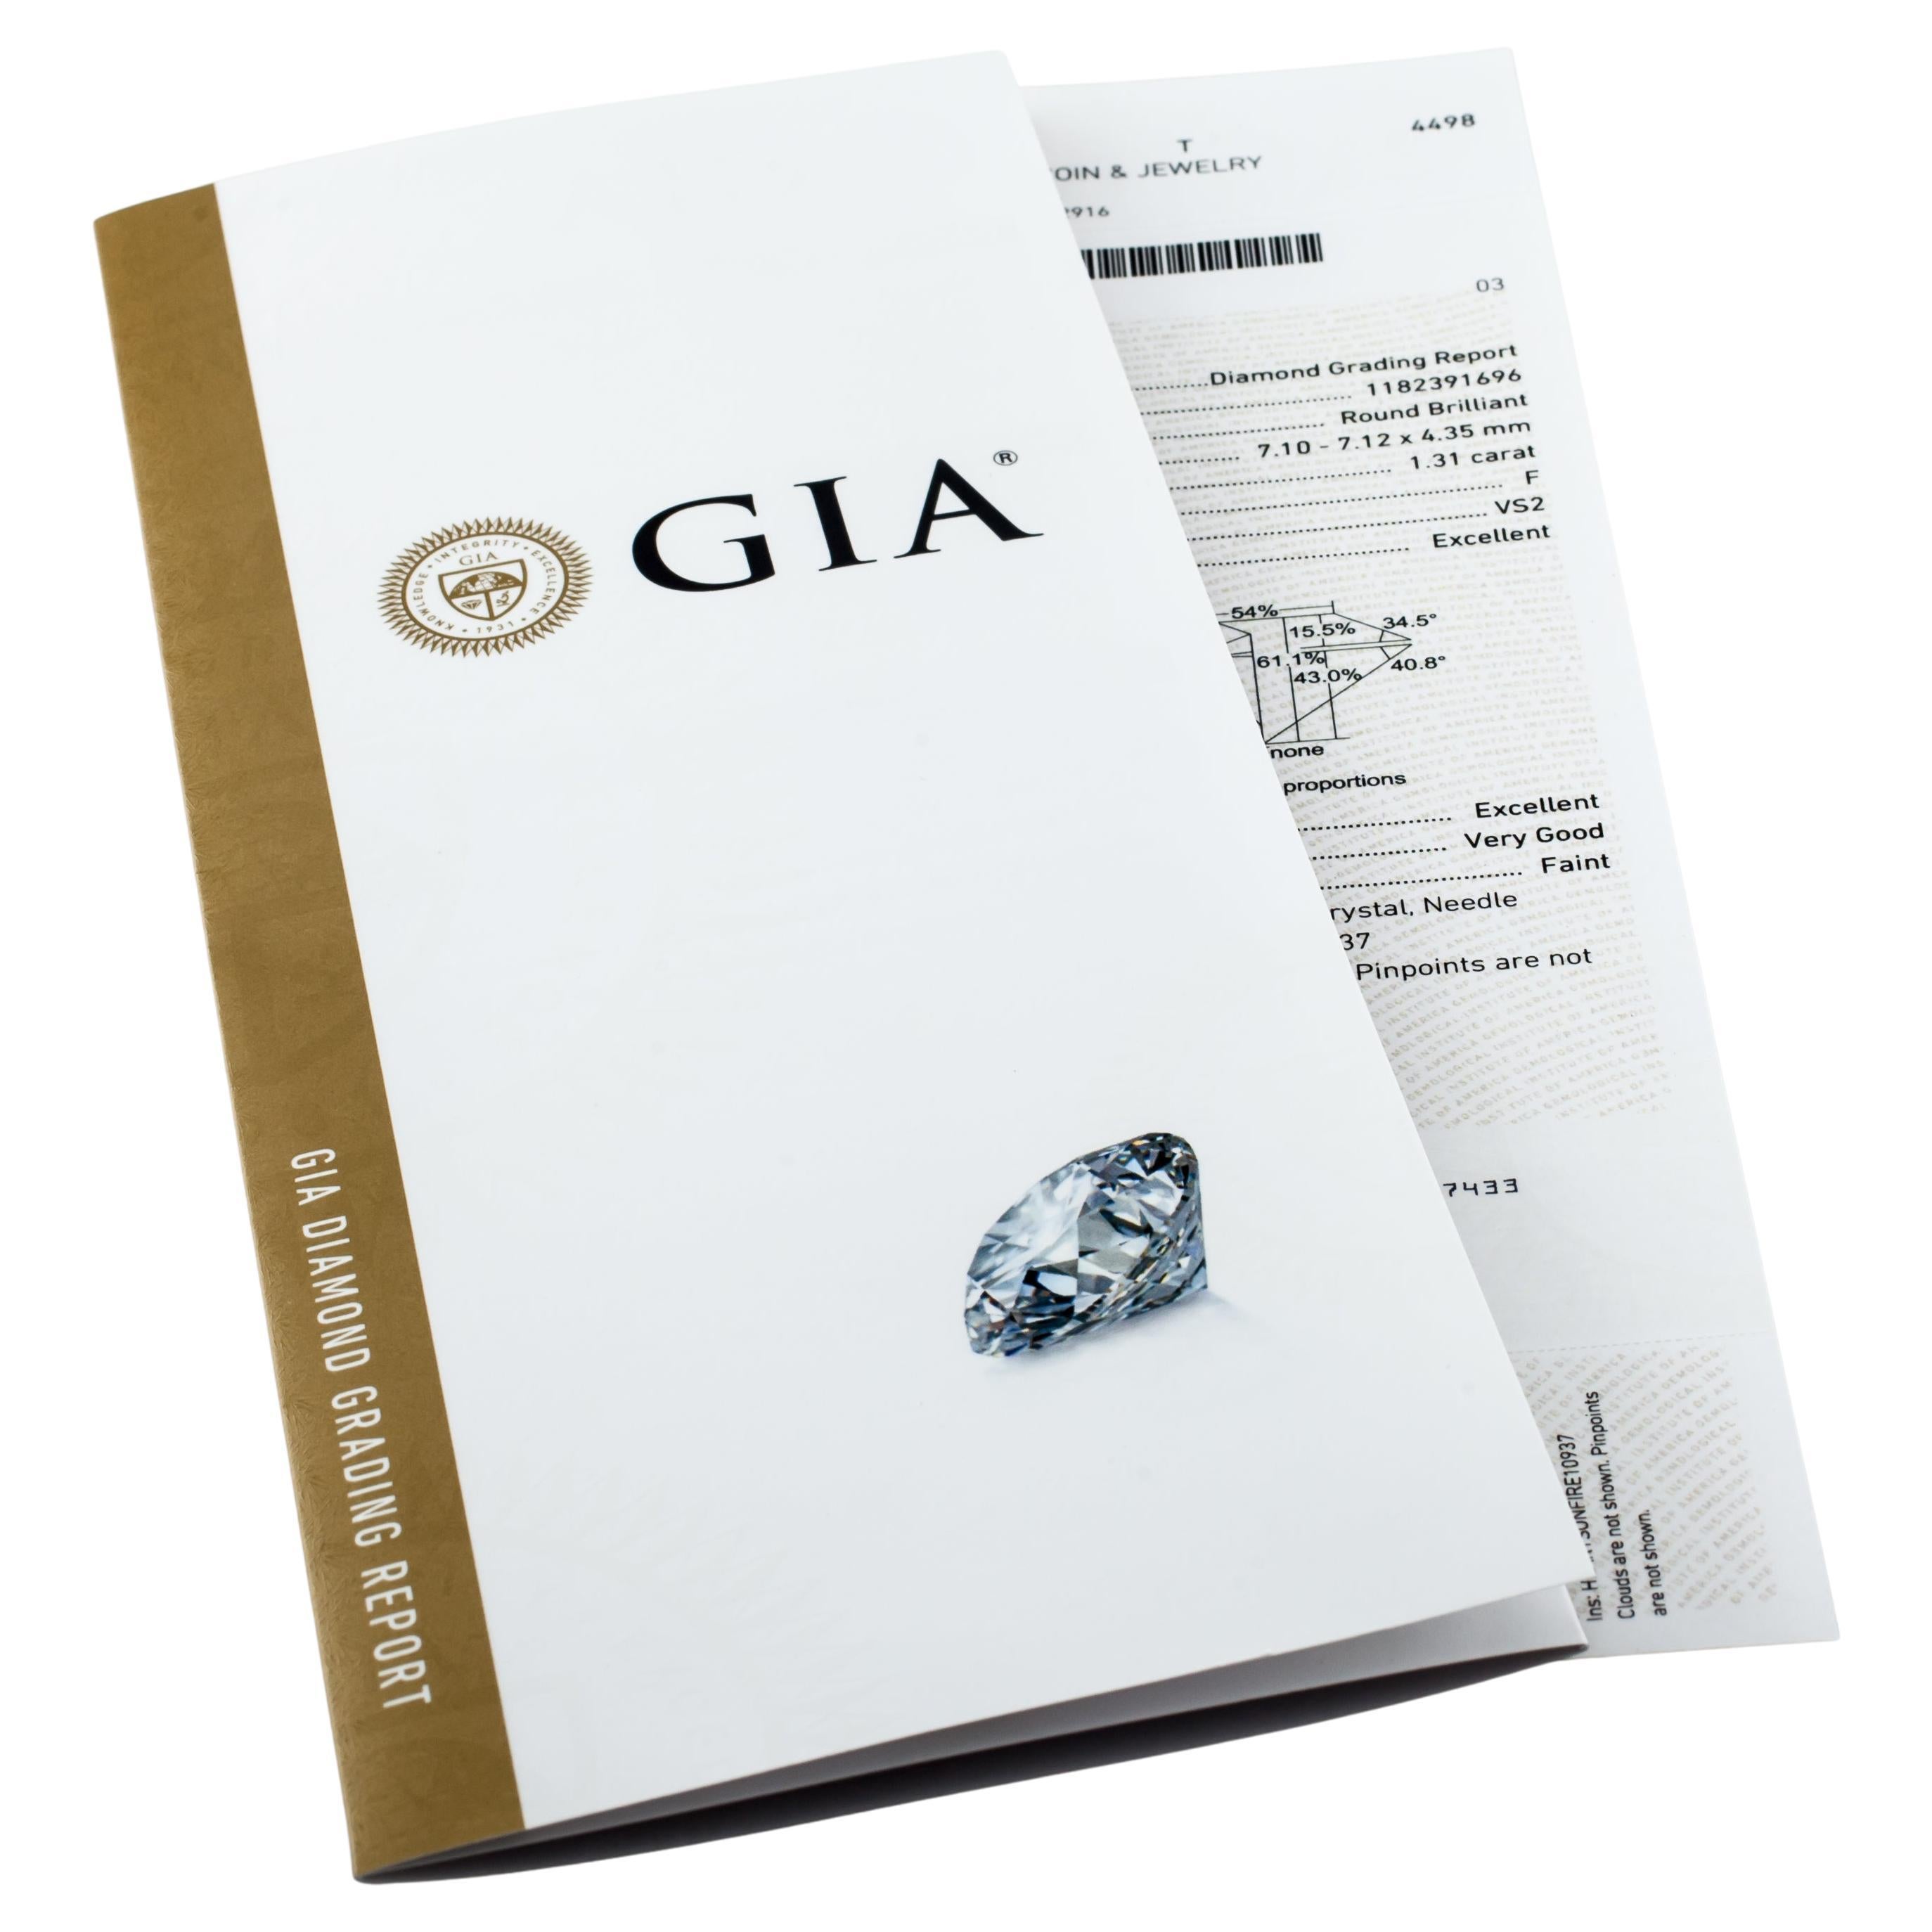 Informations générales sur le diamant
Numéro de rapport GIA : 1182391696
Taille du diamant : Brilliante ronde 
Dimensions : 7.12  x  7.10  -  4.35

Résultats de la classification des diamants
Poids en carats : 1,31
Grade de couleur : F
Grade de